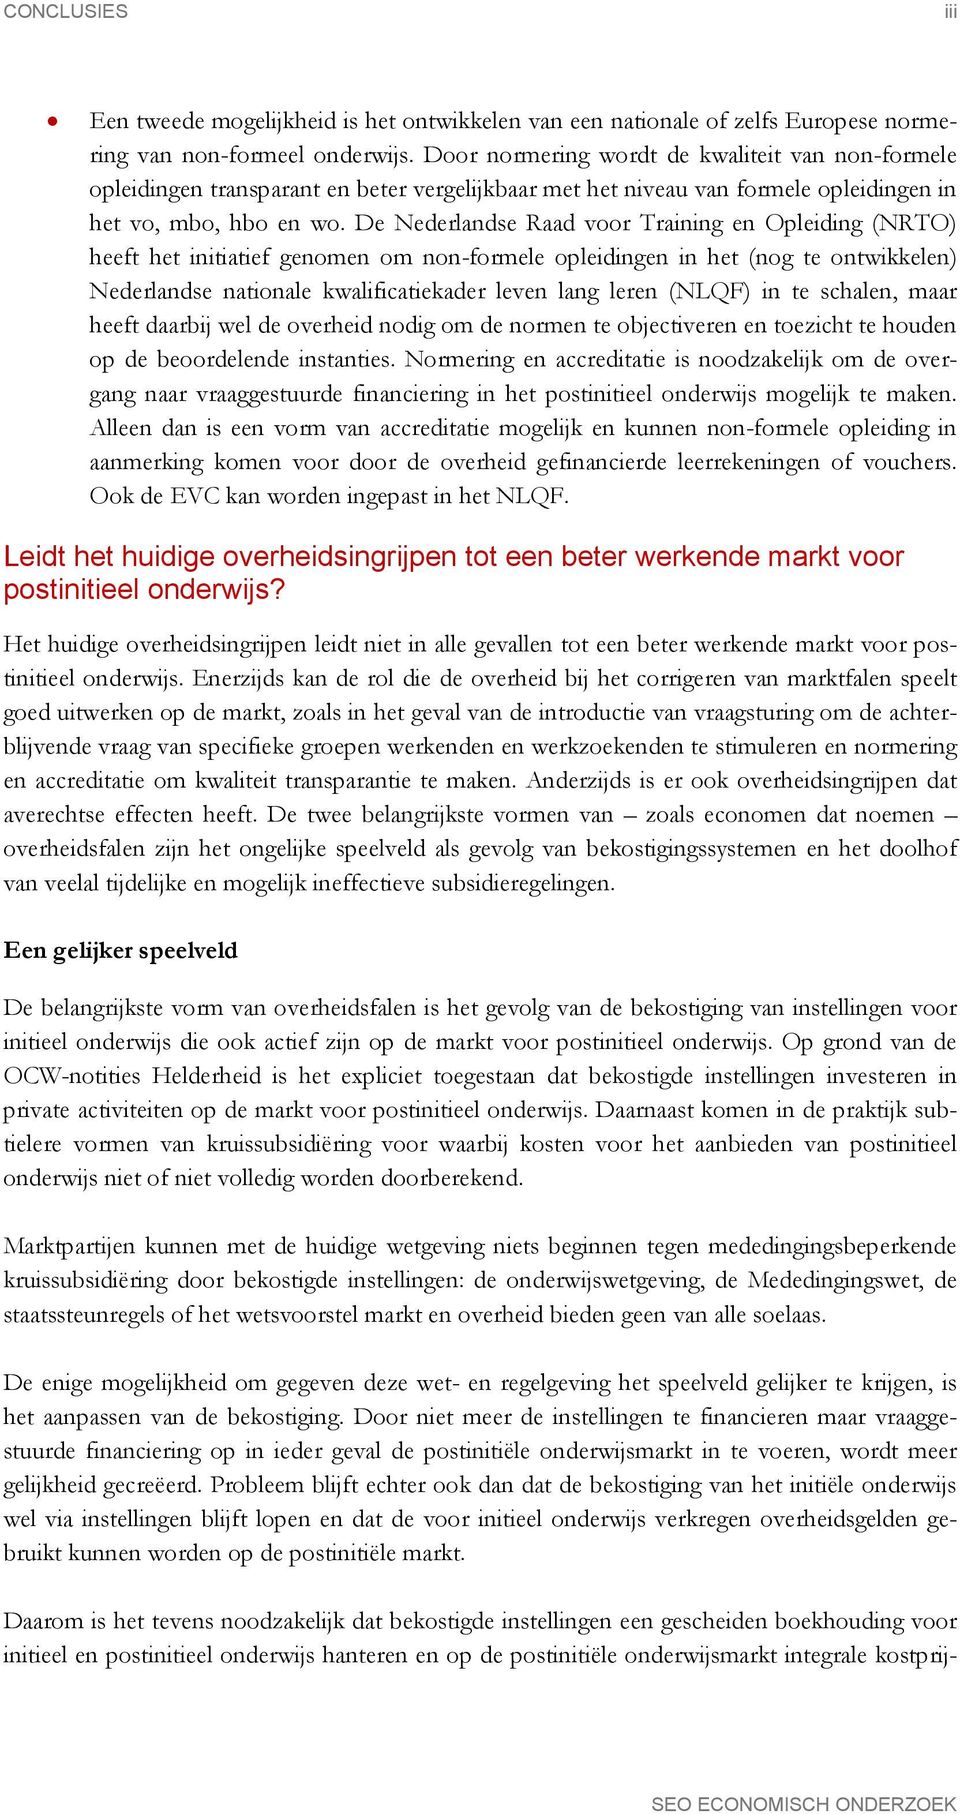 De Nederlandse Raad voor Training en Opleiding (NRTO) heeft het initiatief genomen om non-formele opleidingen in het (nog te ontwikkelen) Nederlandse nationale kwalificatiekader leven lang leren